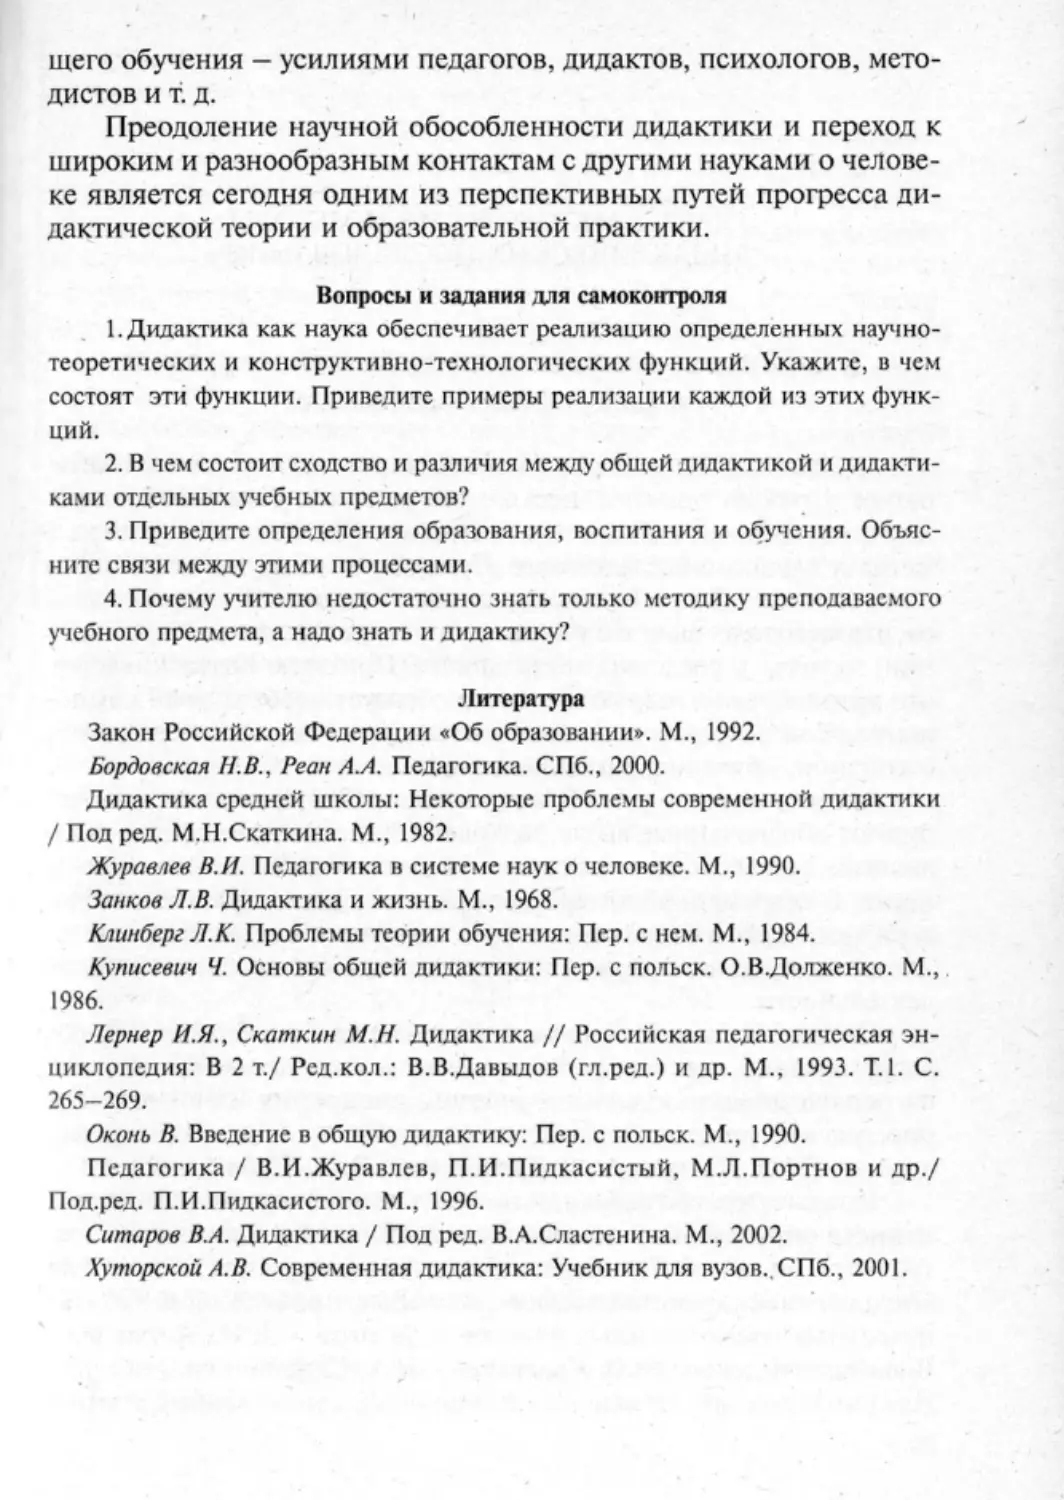 Загрекова Л.В., Николаева В.В - 0020